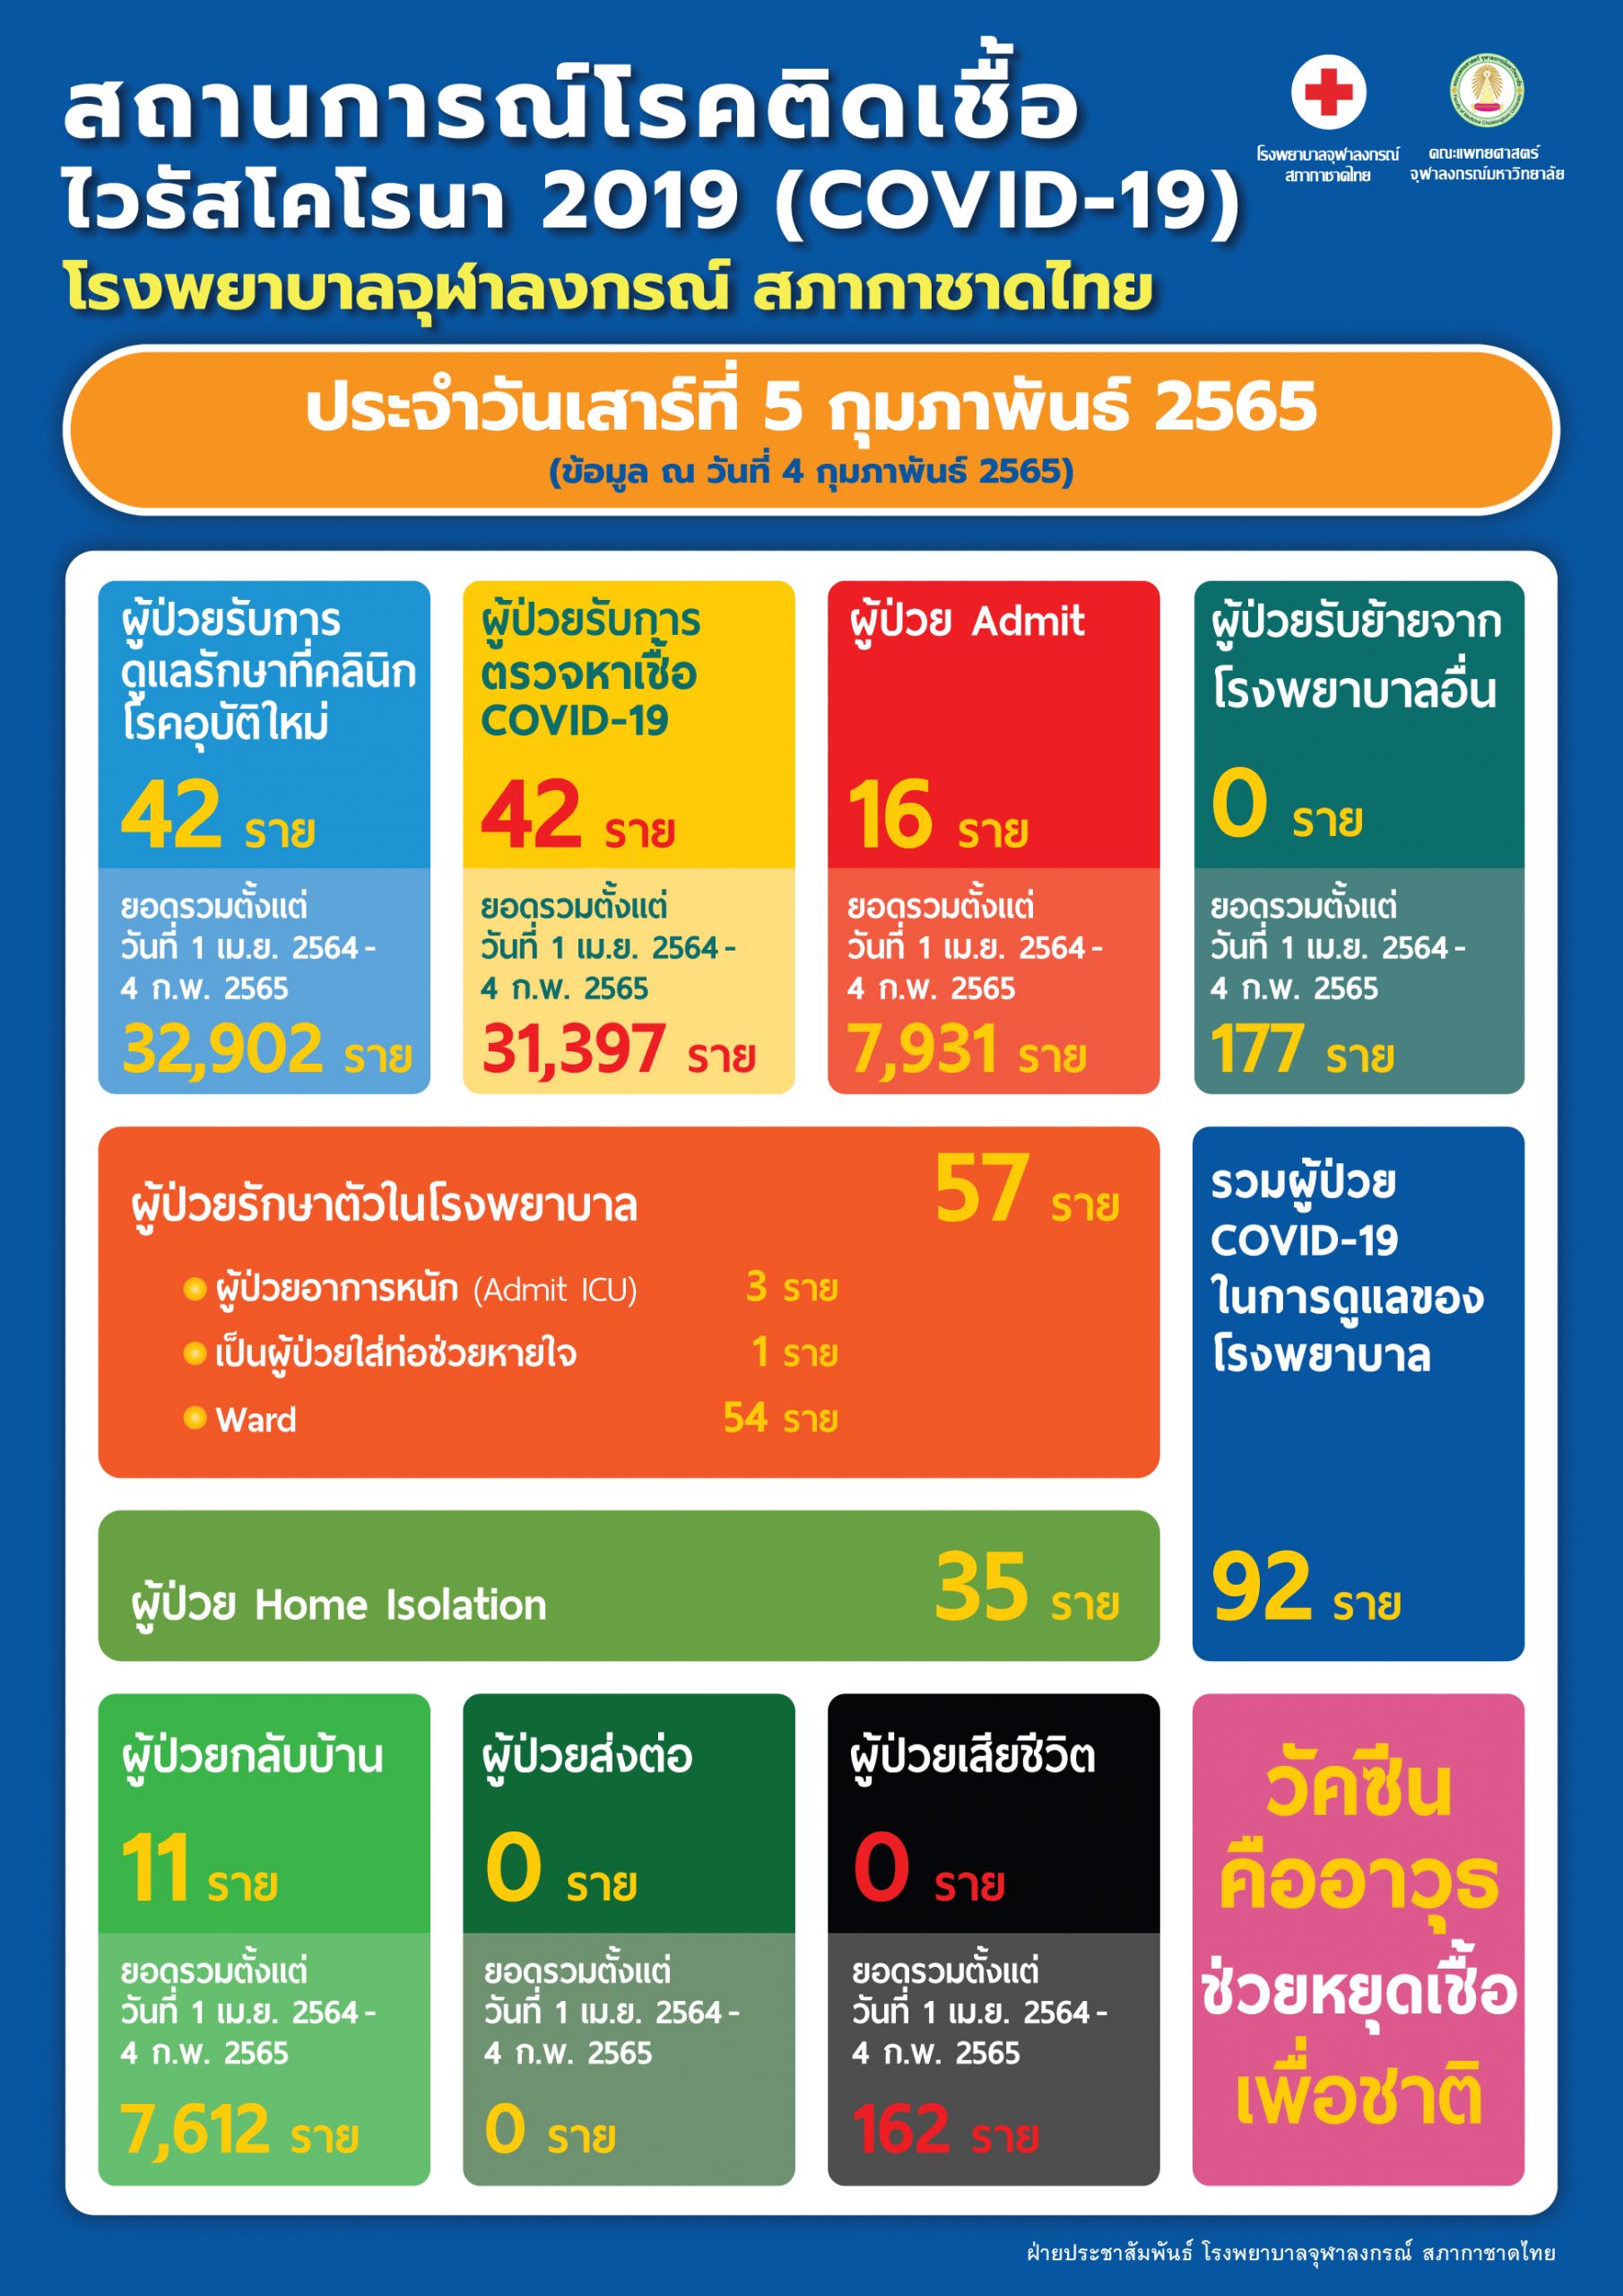 สถานการณ์โรคติดเชื้อไวรัสโคโรนา 2019 (COVID-19) โรงพยาบาลจุฬาลงกรณ์ สภากาชาดไทย ประจำวันเสาร์ที่ 5 กุมภาพันธ์ 2565